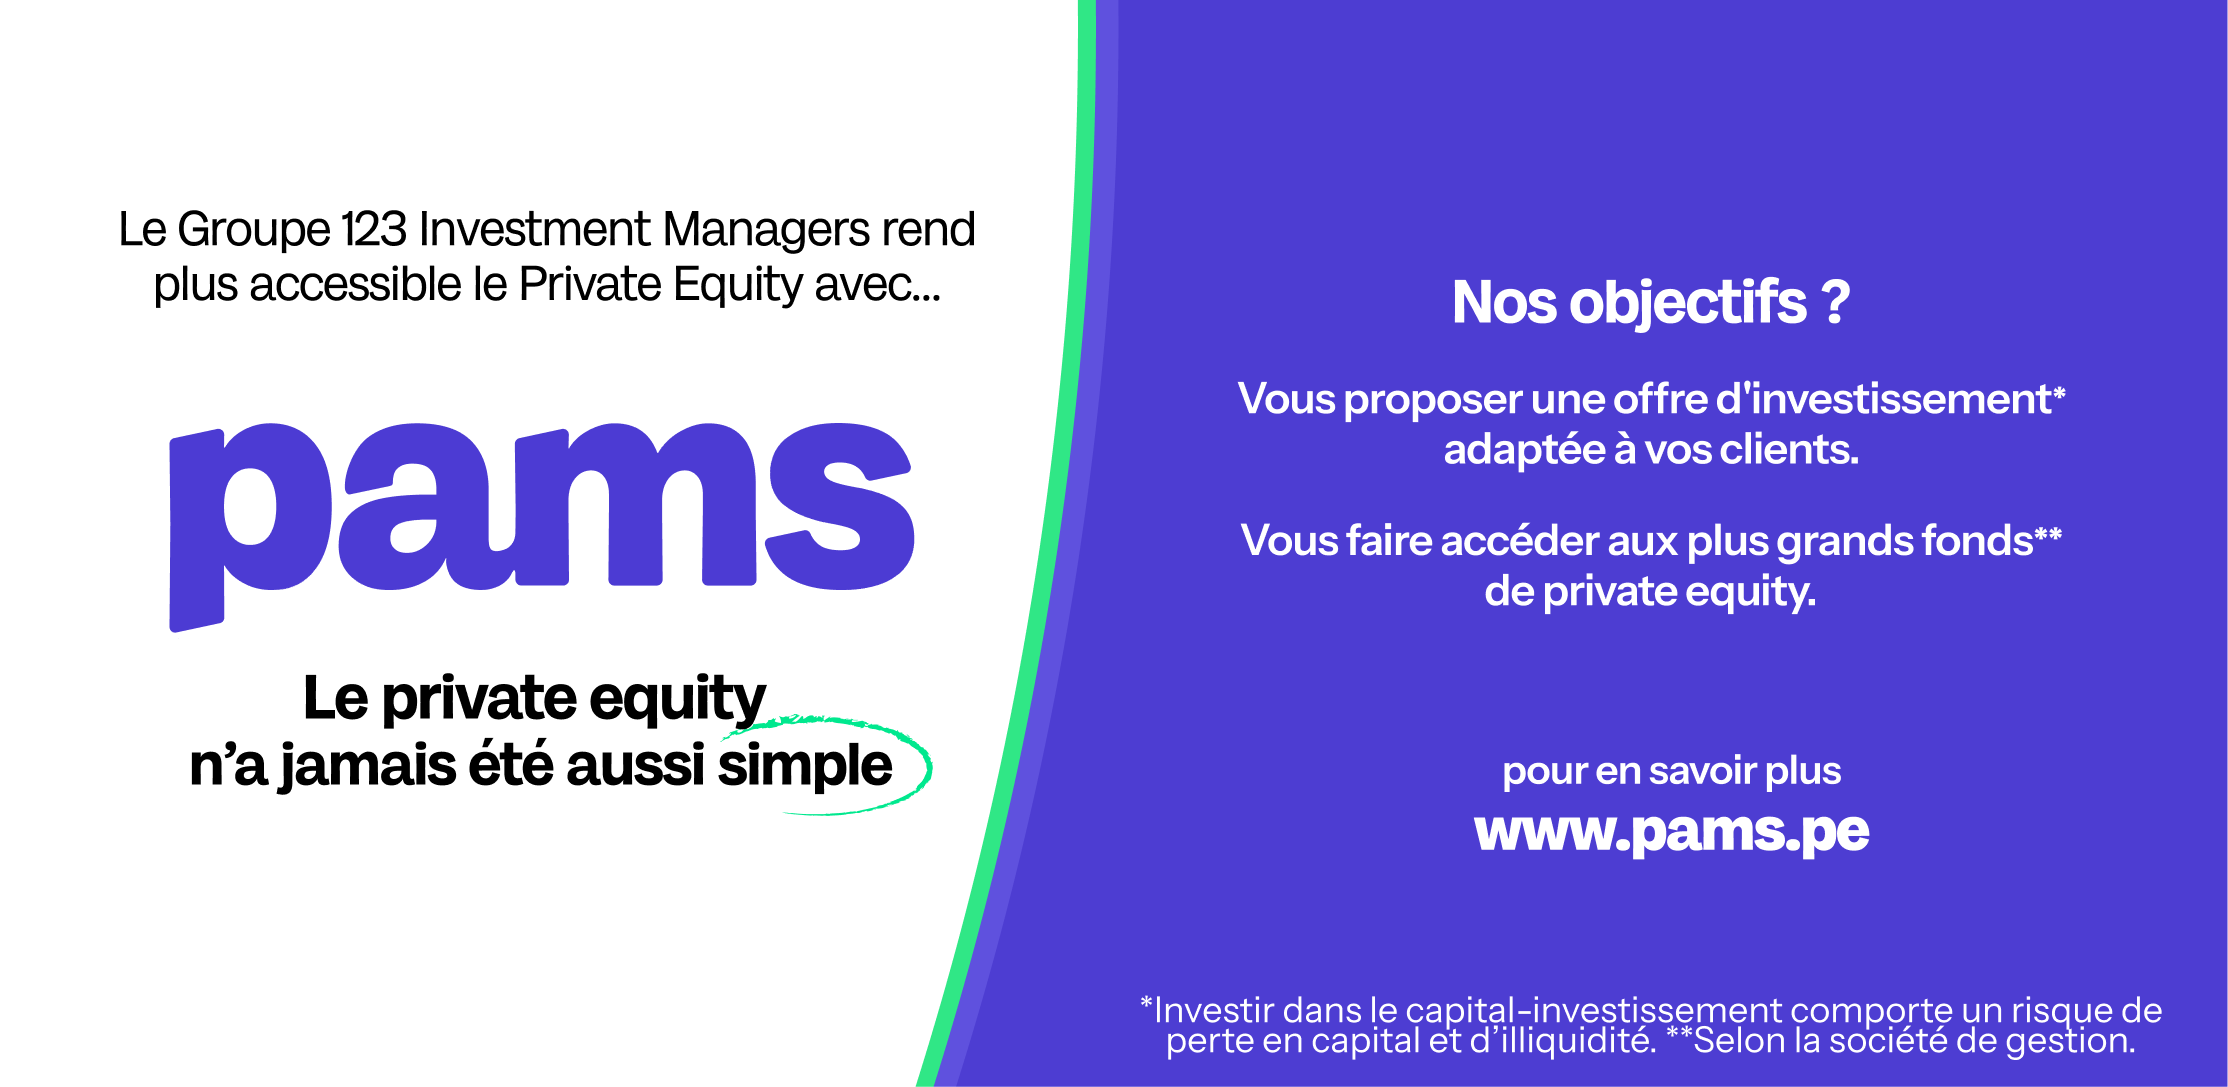 Pams, la nouvelle société de gestion du Groupe 123 Investment Managers dédiée à la multigestion